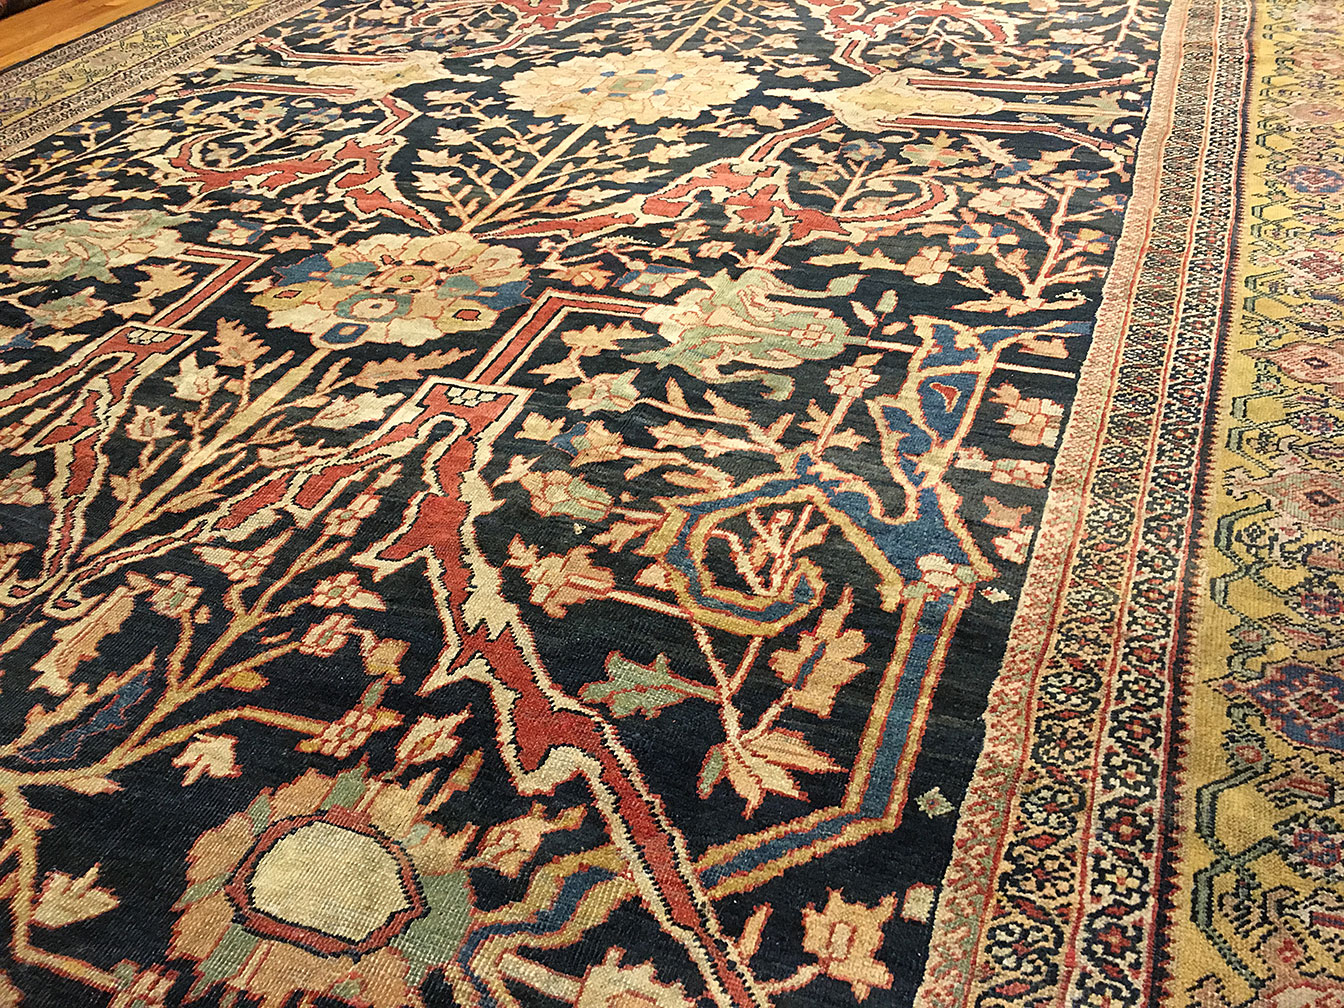 Antique sultan abad Carpet - # 52110